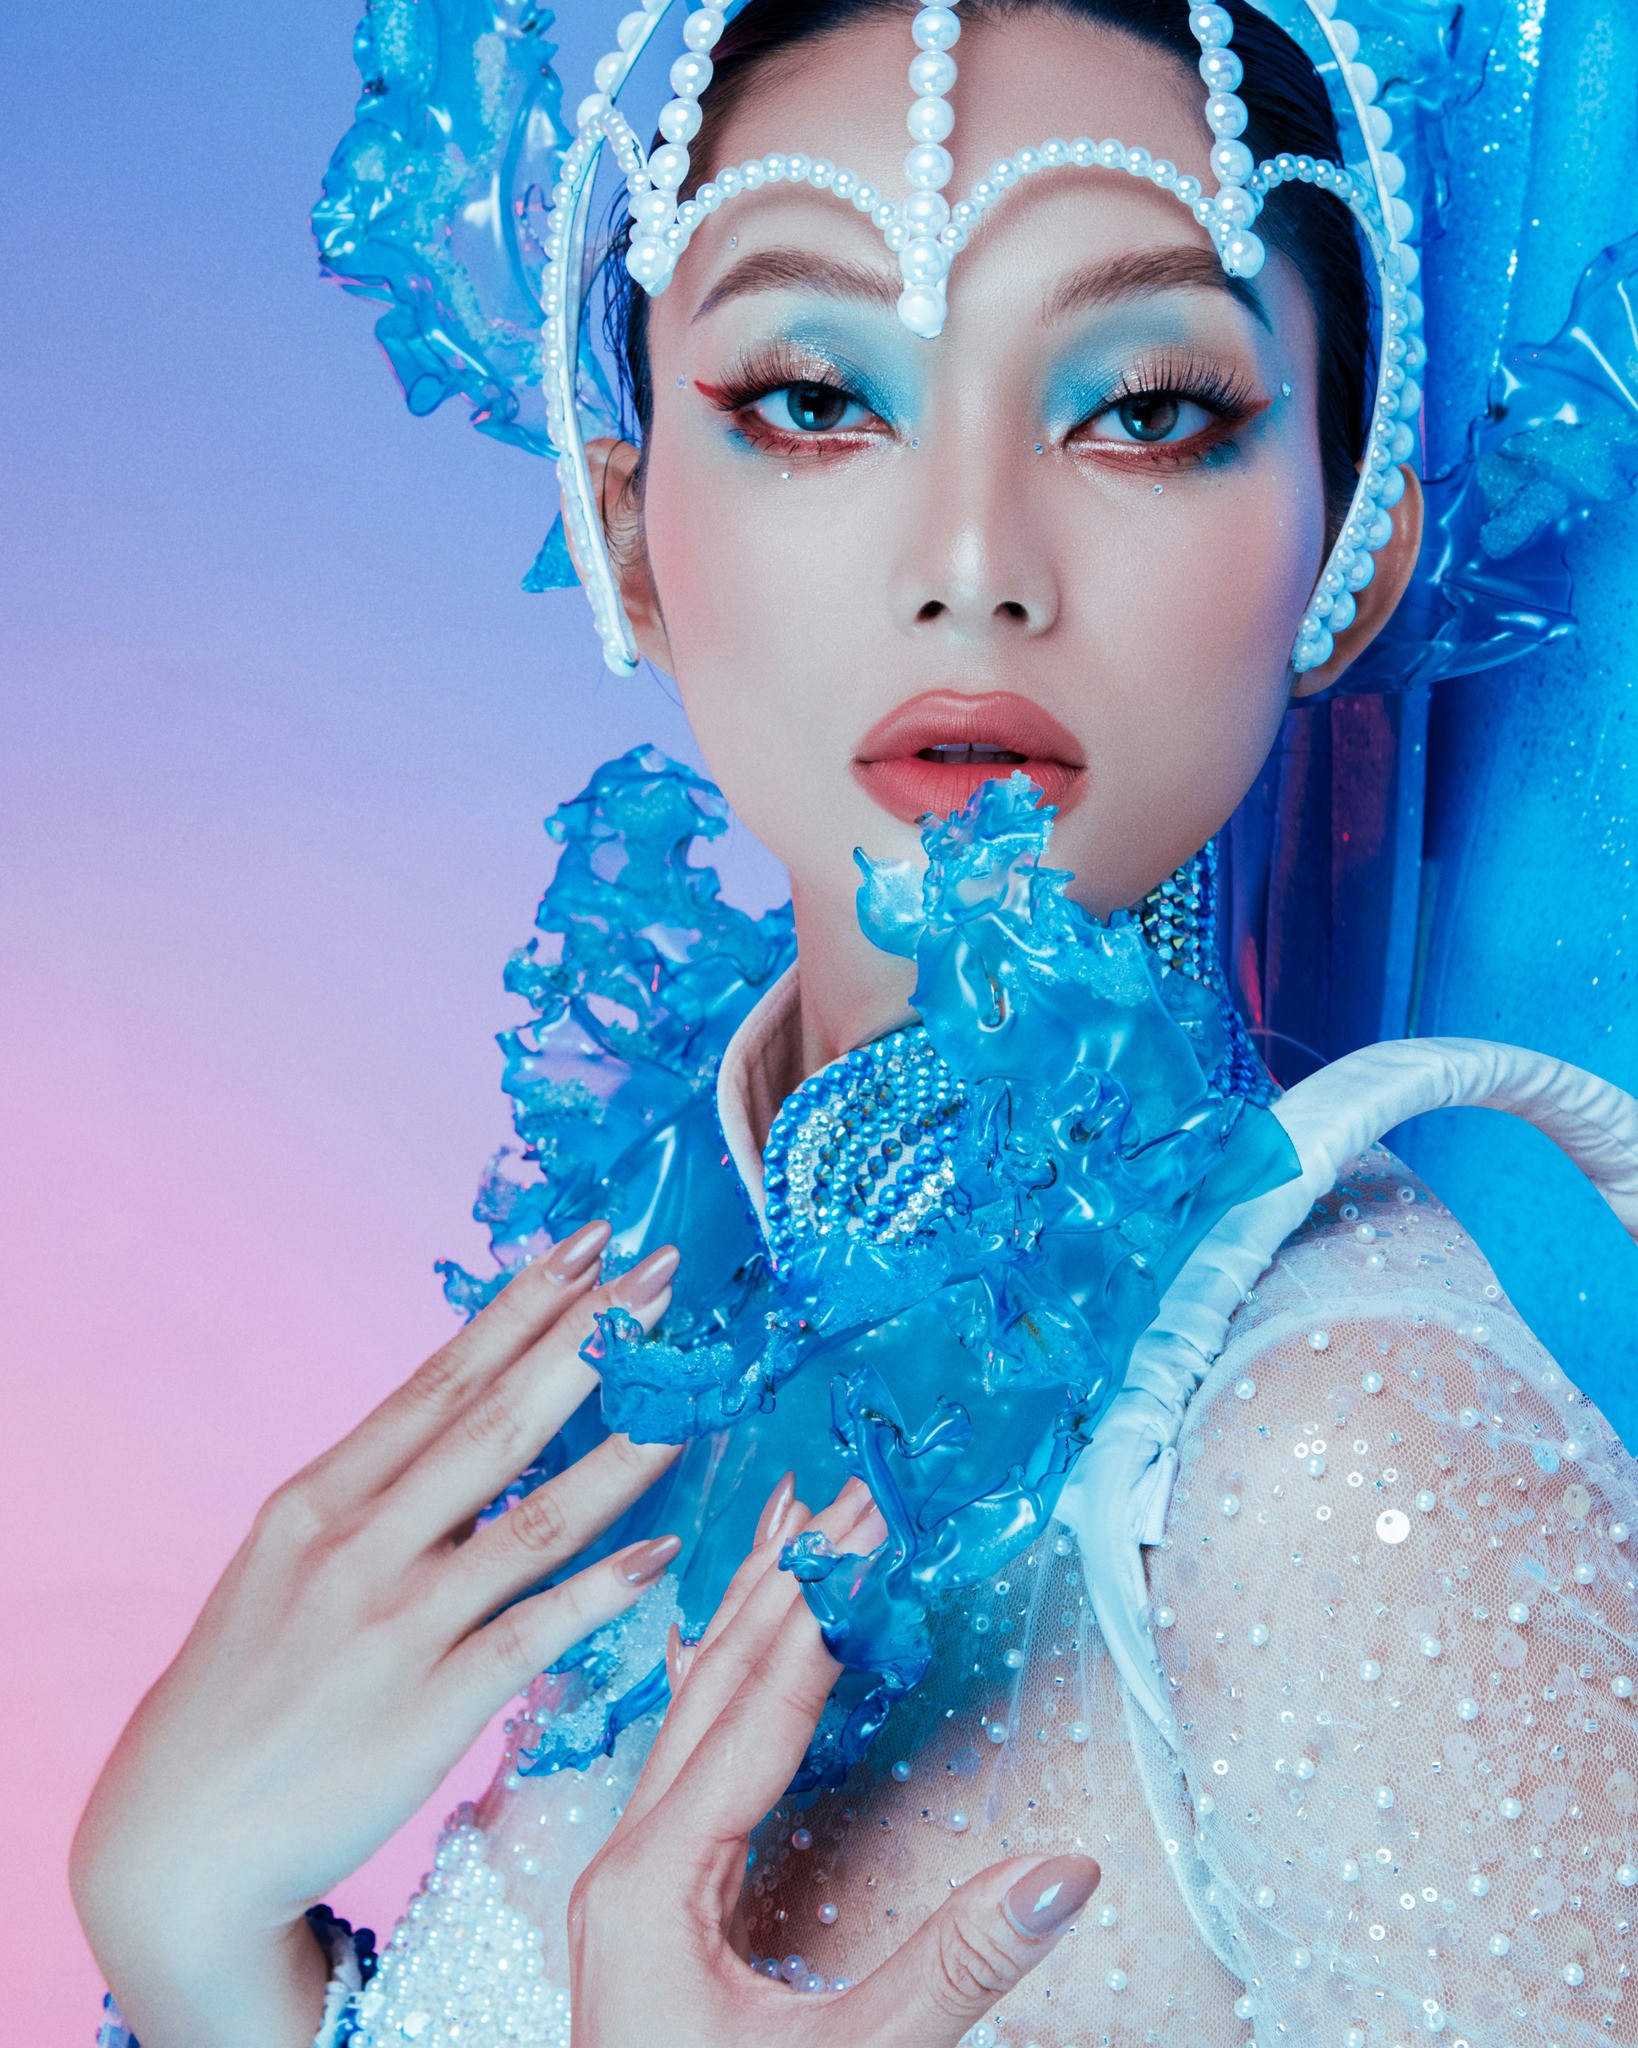 Lâm Thu Hồng hóa nàng tiên của biển trong trang phục dân tộc mang tới The Miss Globe 2022 - Ảnh 4.